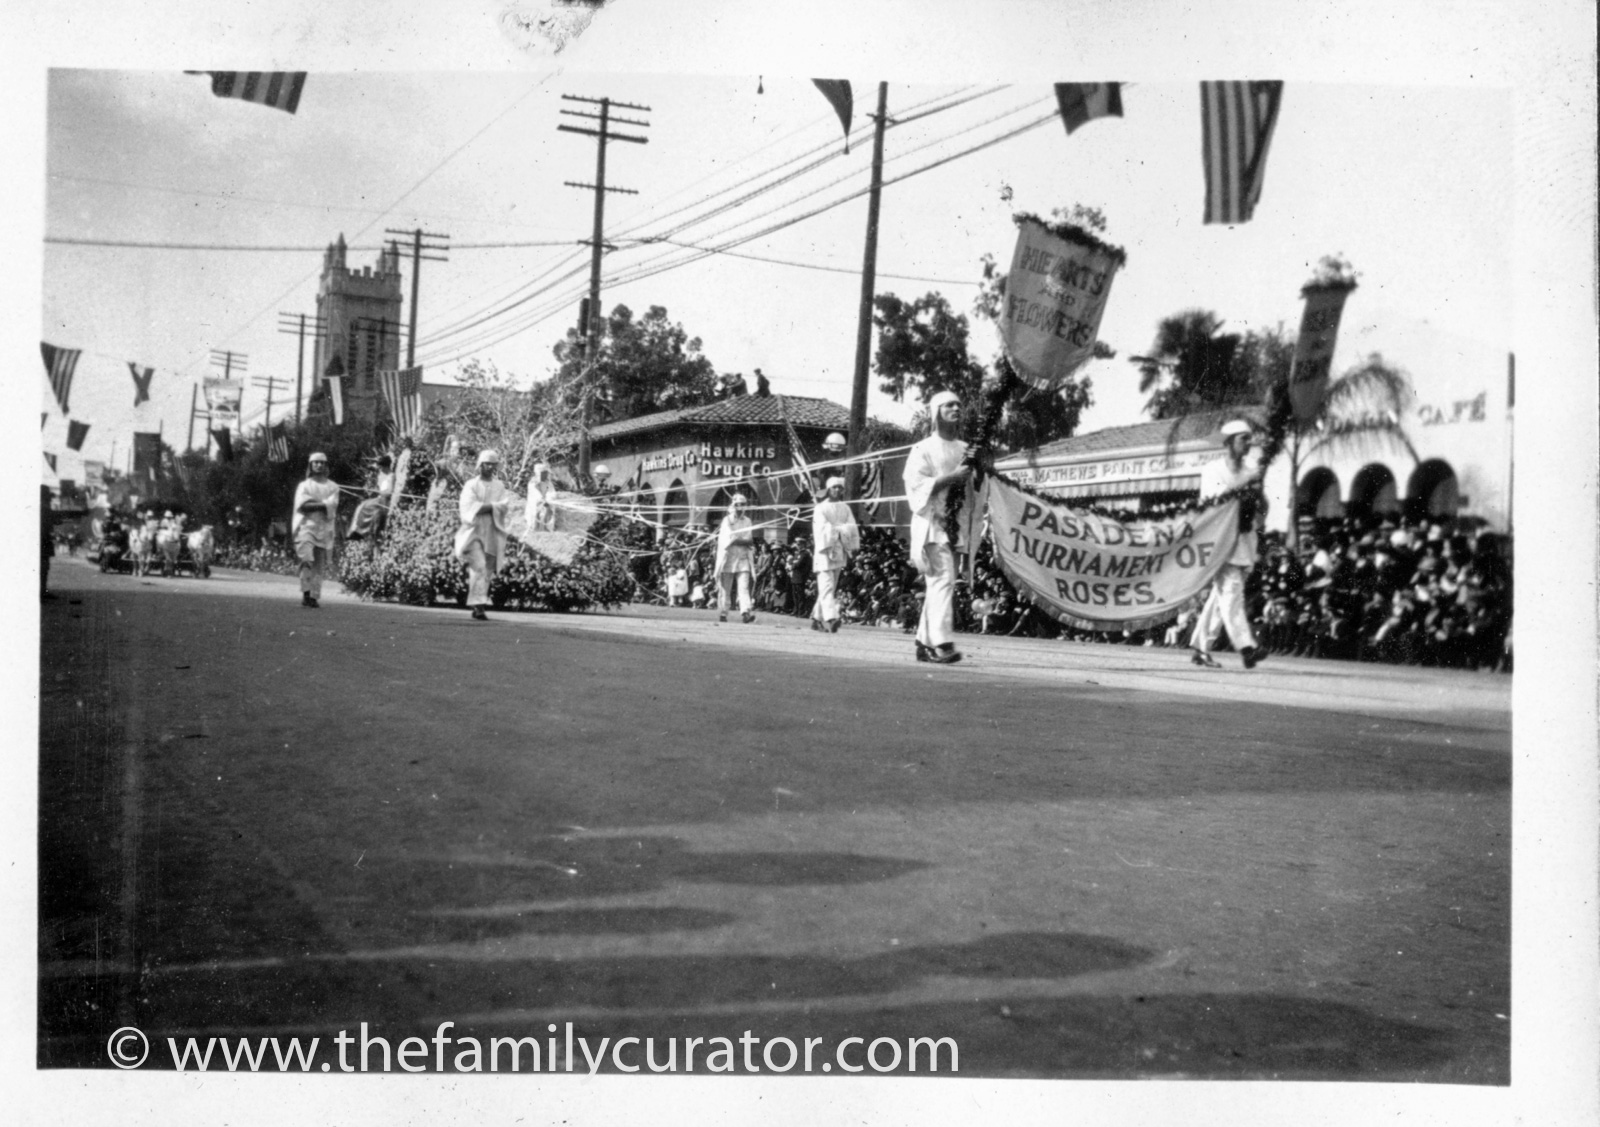 1923 Tournament of Roses Parade Pasadena CA